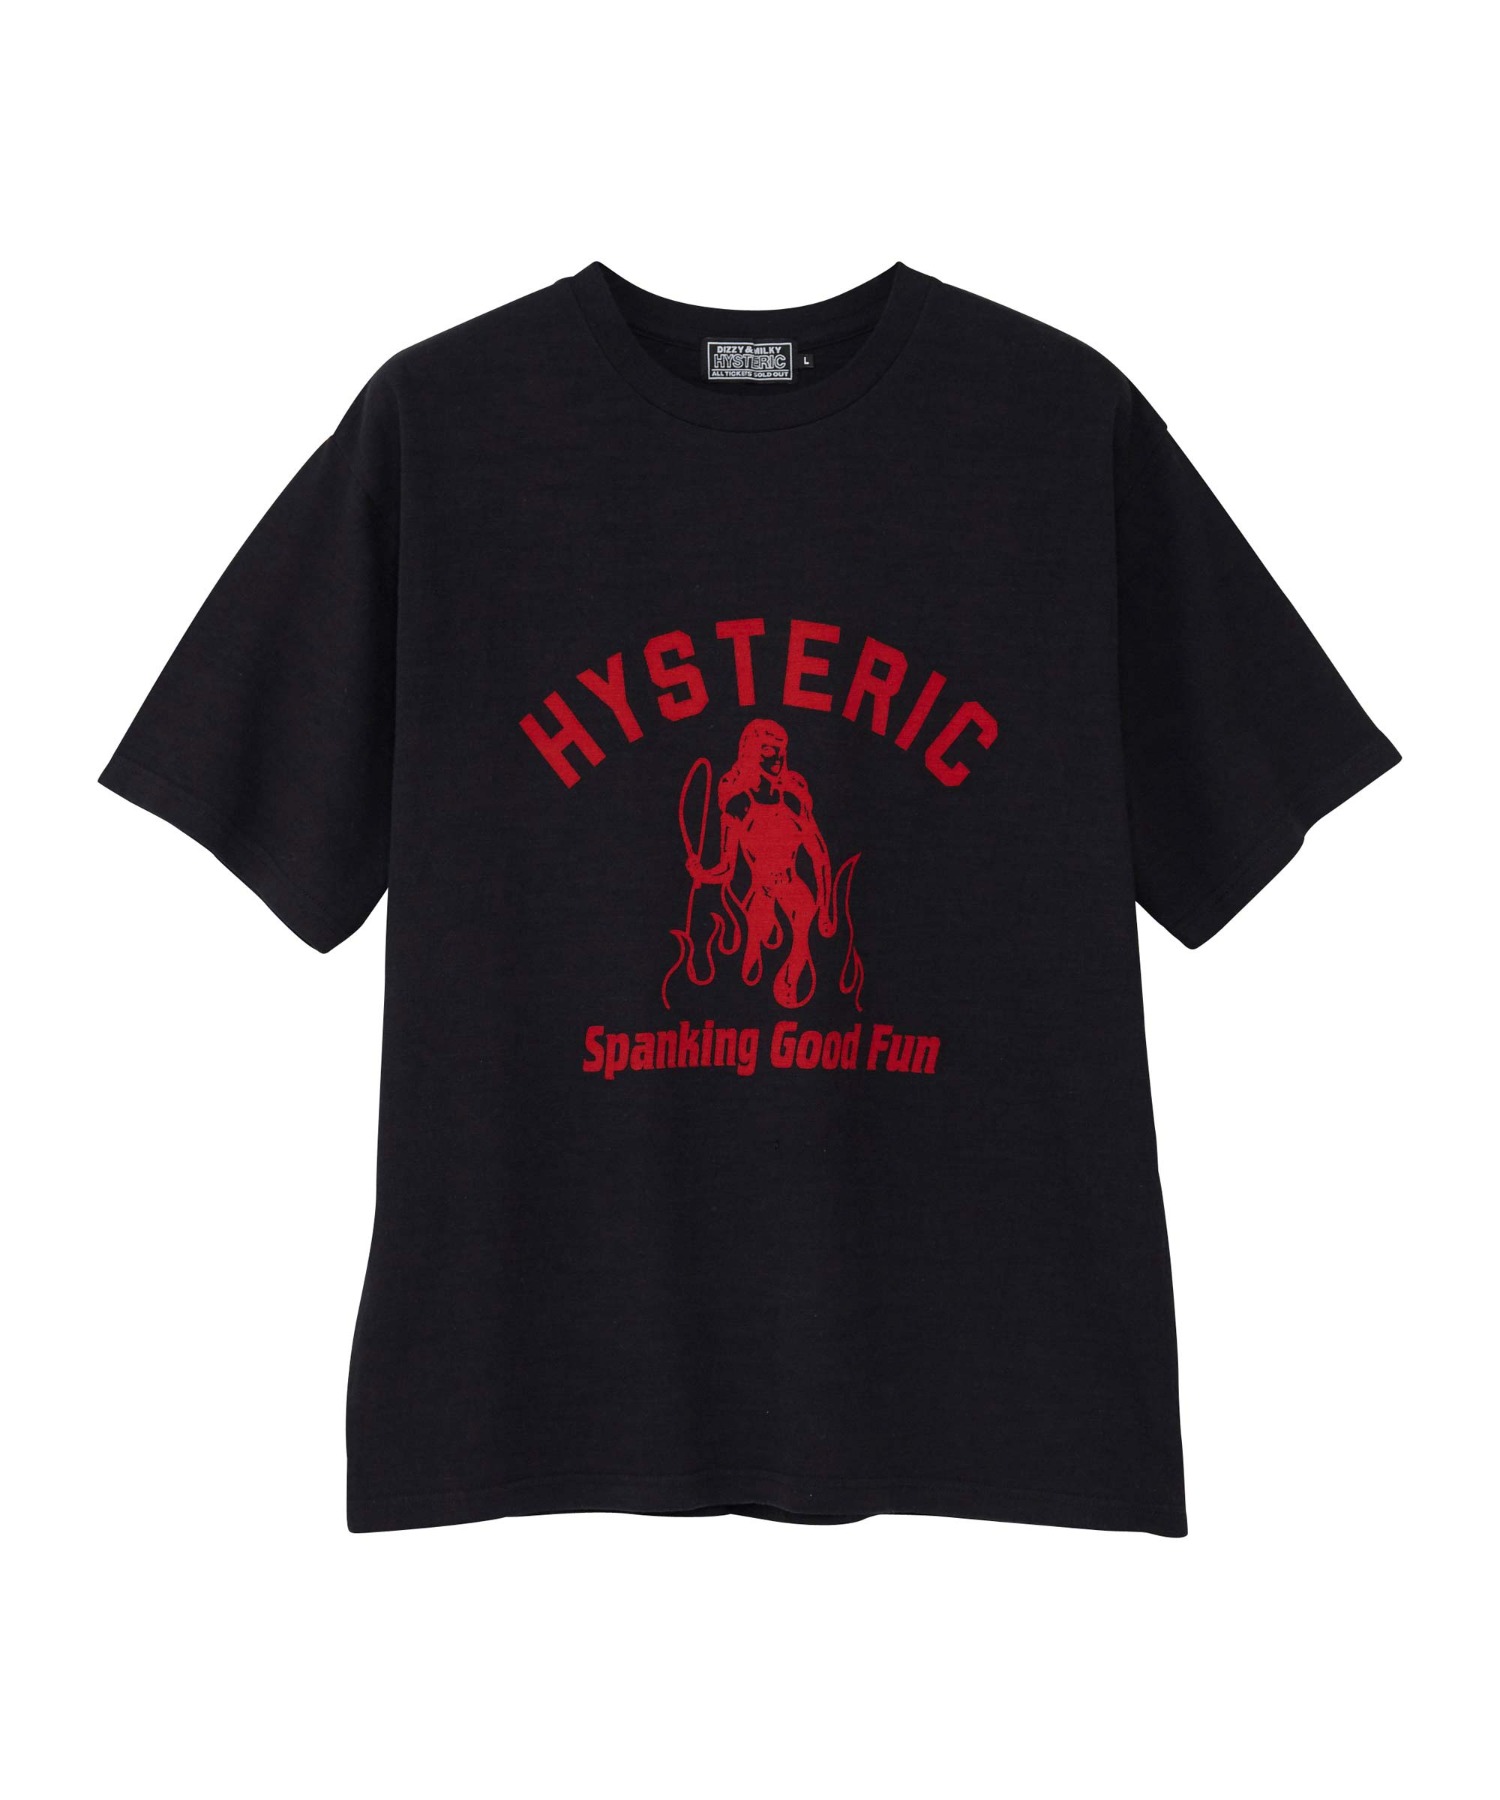 HYSTERIC SWISH Tシャツ